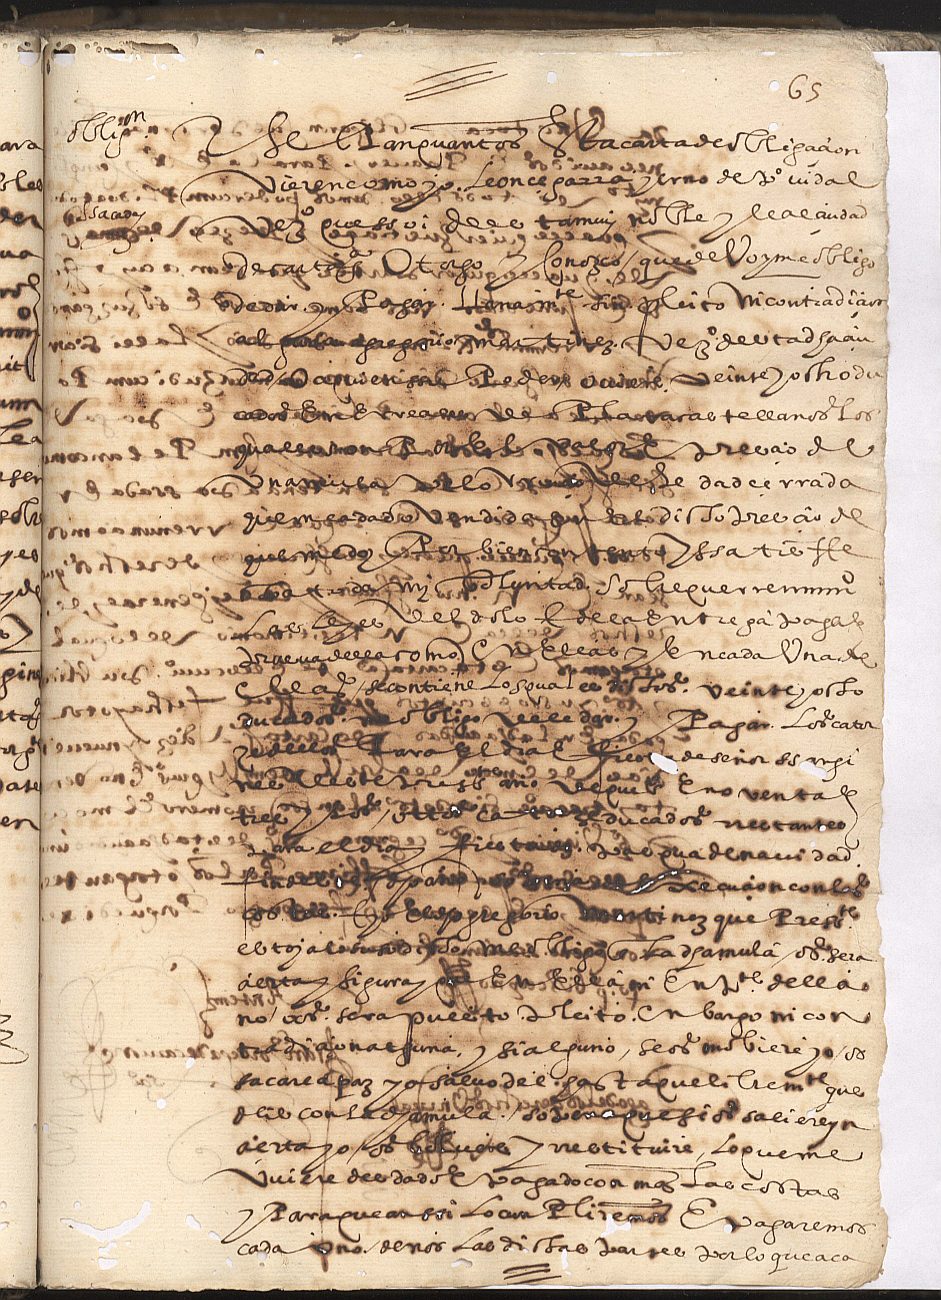 Obligación de León Cegarra, yerno de Pedro Vidal y vecino de Cartagena, de pagar a Gregorio Martínez 28 ducados por una mula.